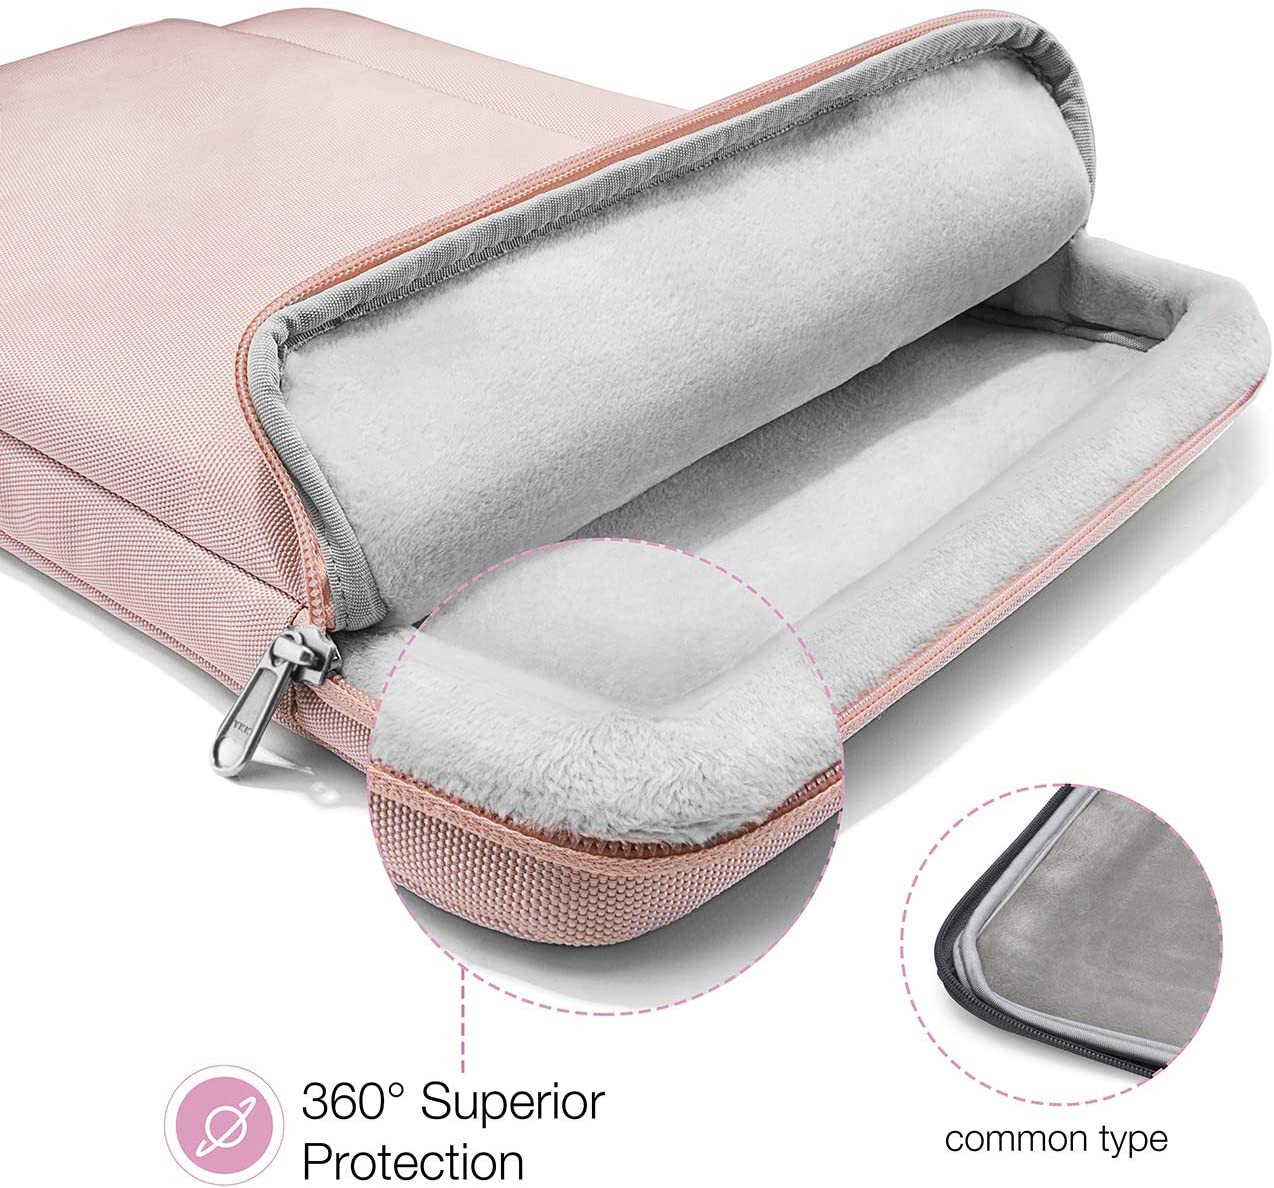 Túi Xách Chống Sốc Briefcase Macbook Pro/Air 13” New Pink (A14-B02C)chính hãng